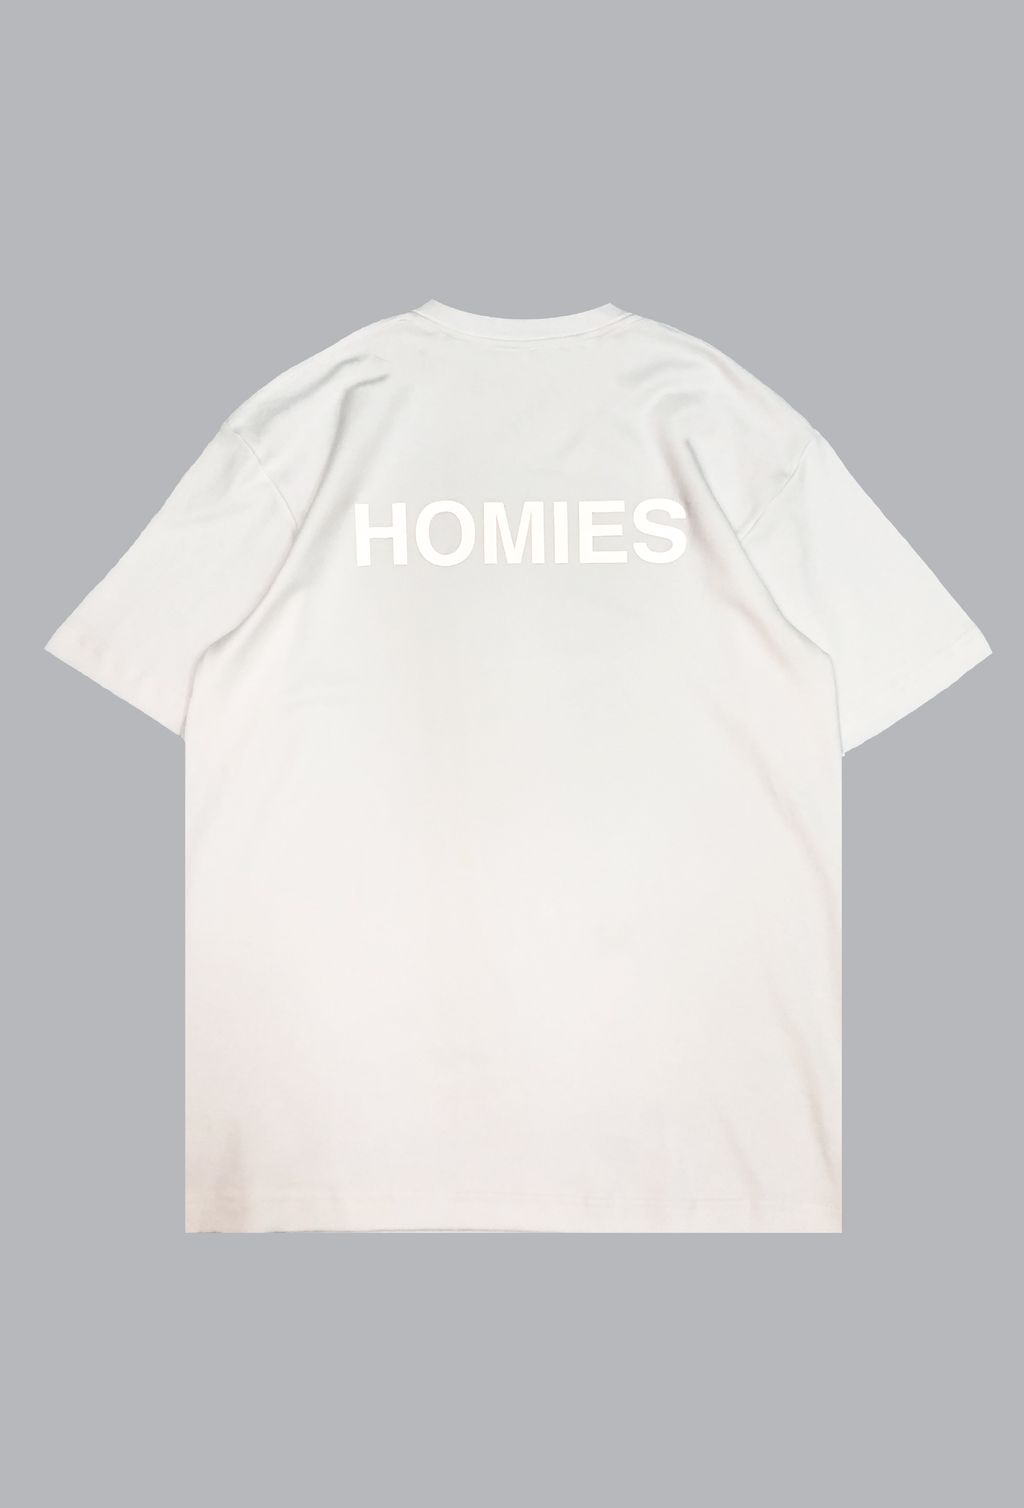 Homies white back-01.jpg